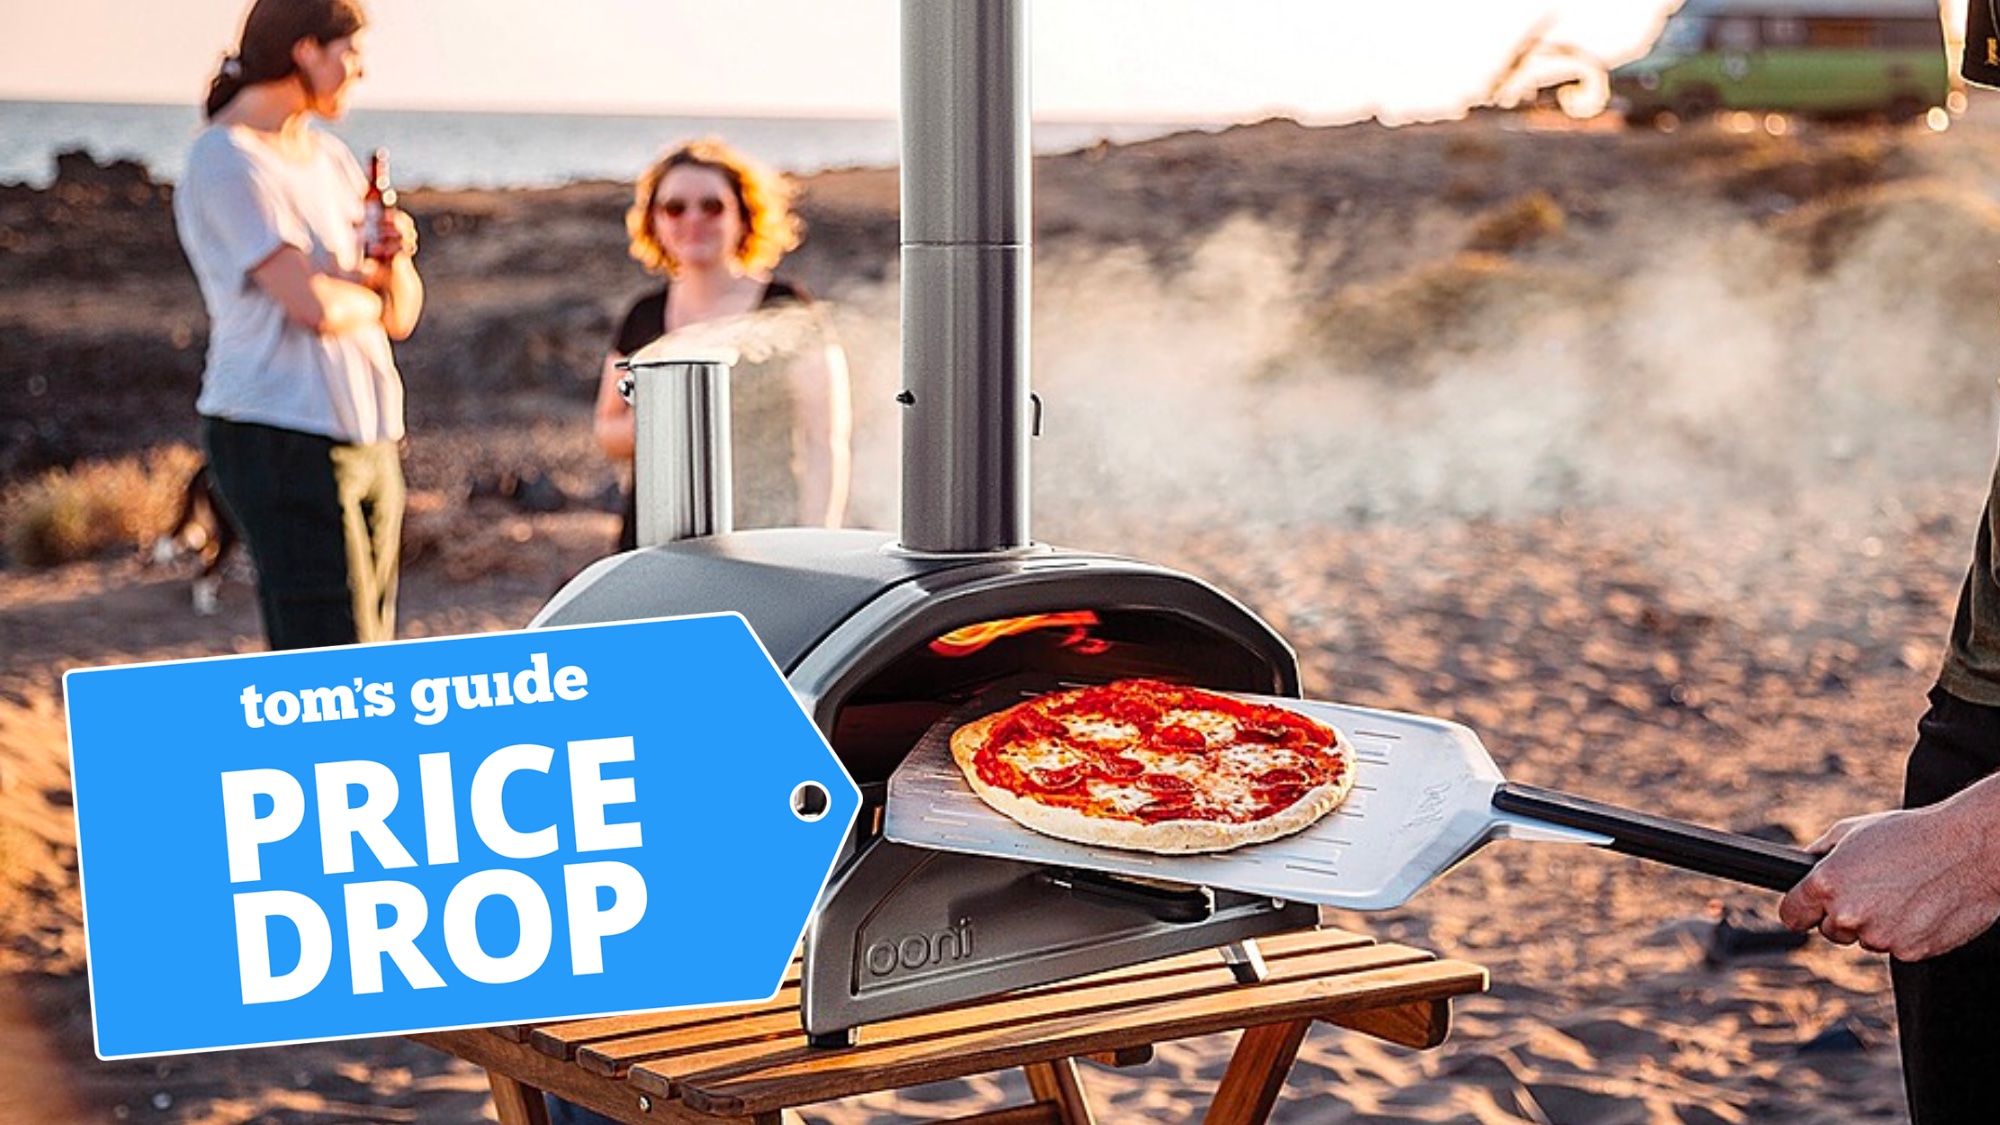 Ooni fyra pizza oven on a beach